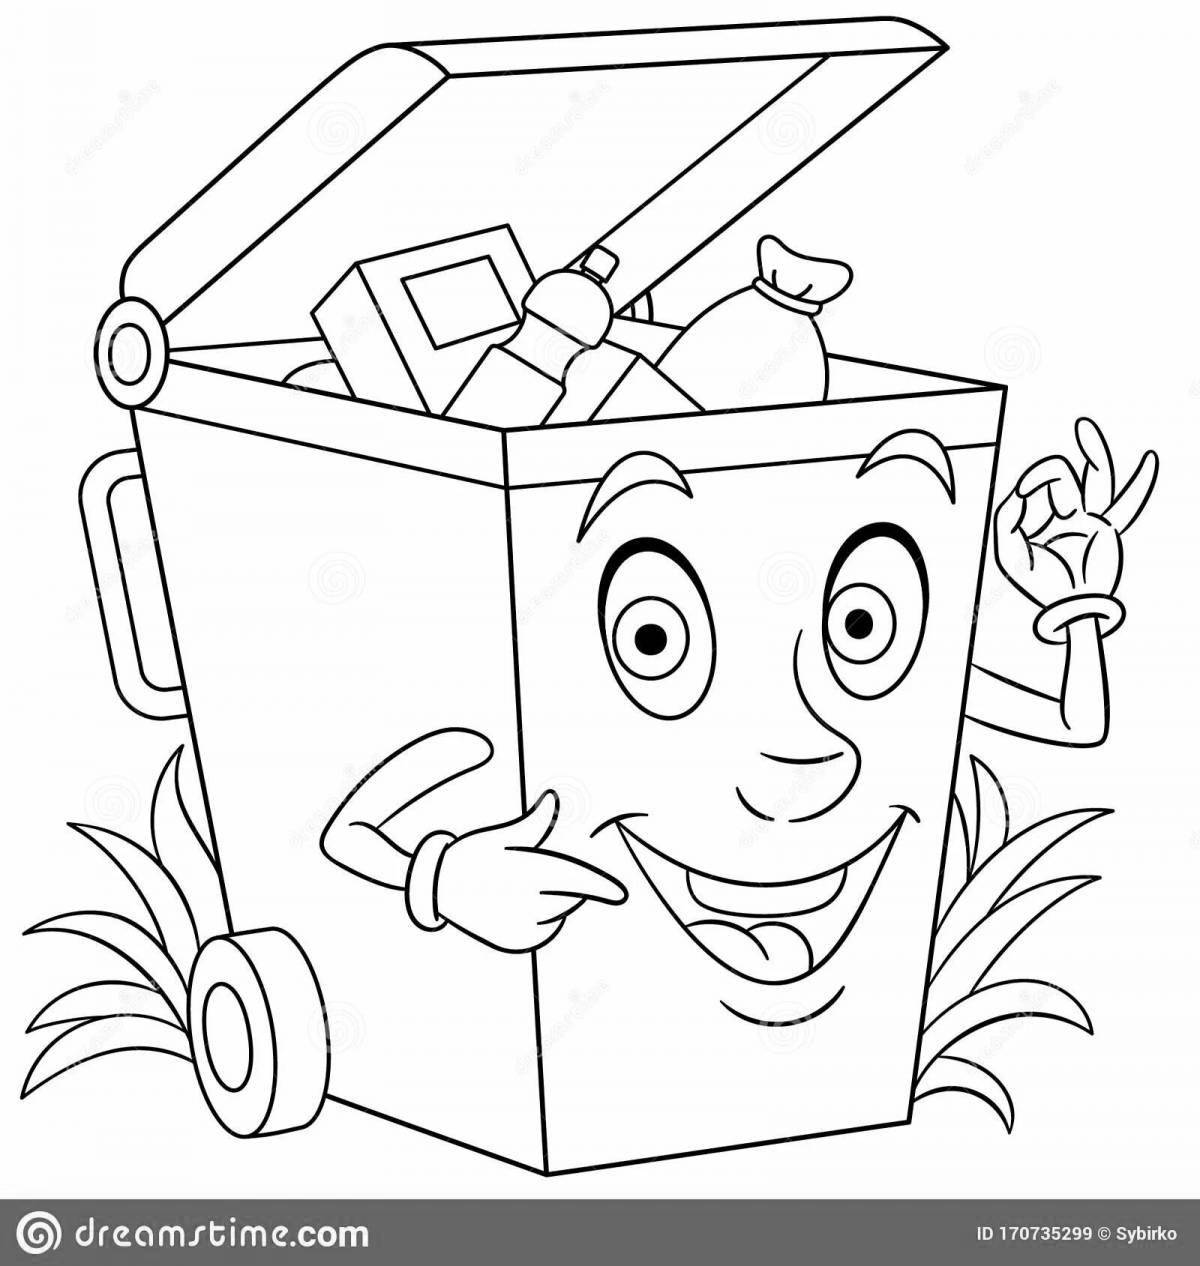 Яркая раскраска для детей по сортировке отходов